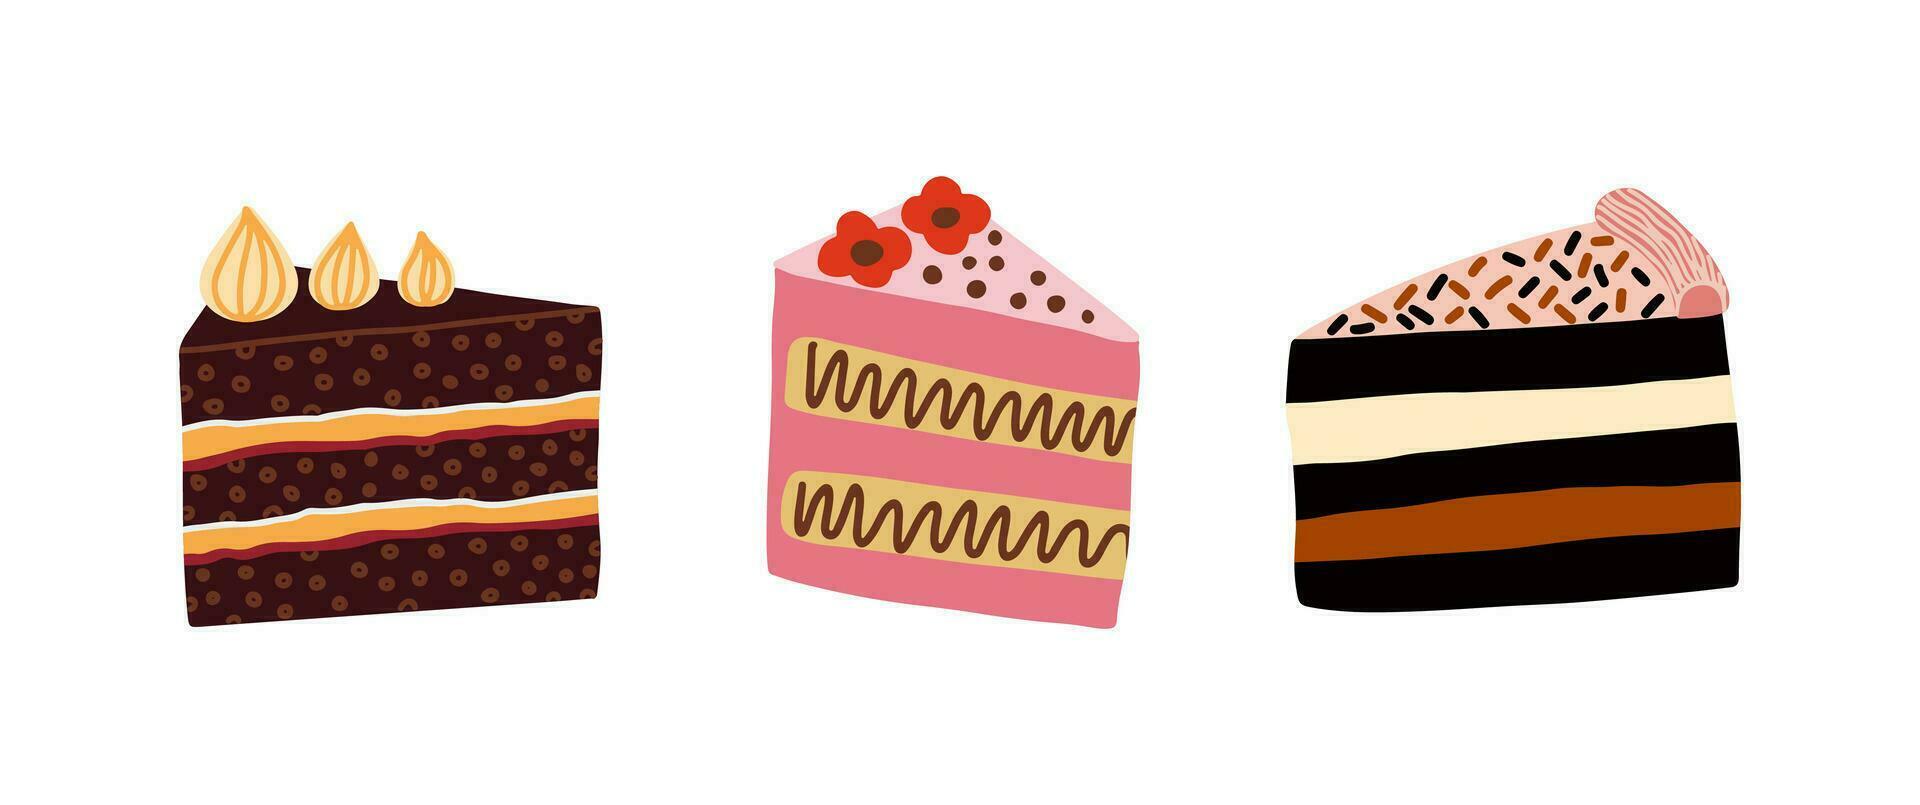 conjunto do diferente bolo fatias com creme. aniversário bolo peças, morango, chocolate bolos. vetor ilustração.